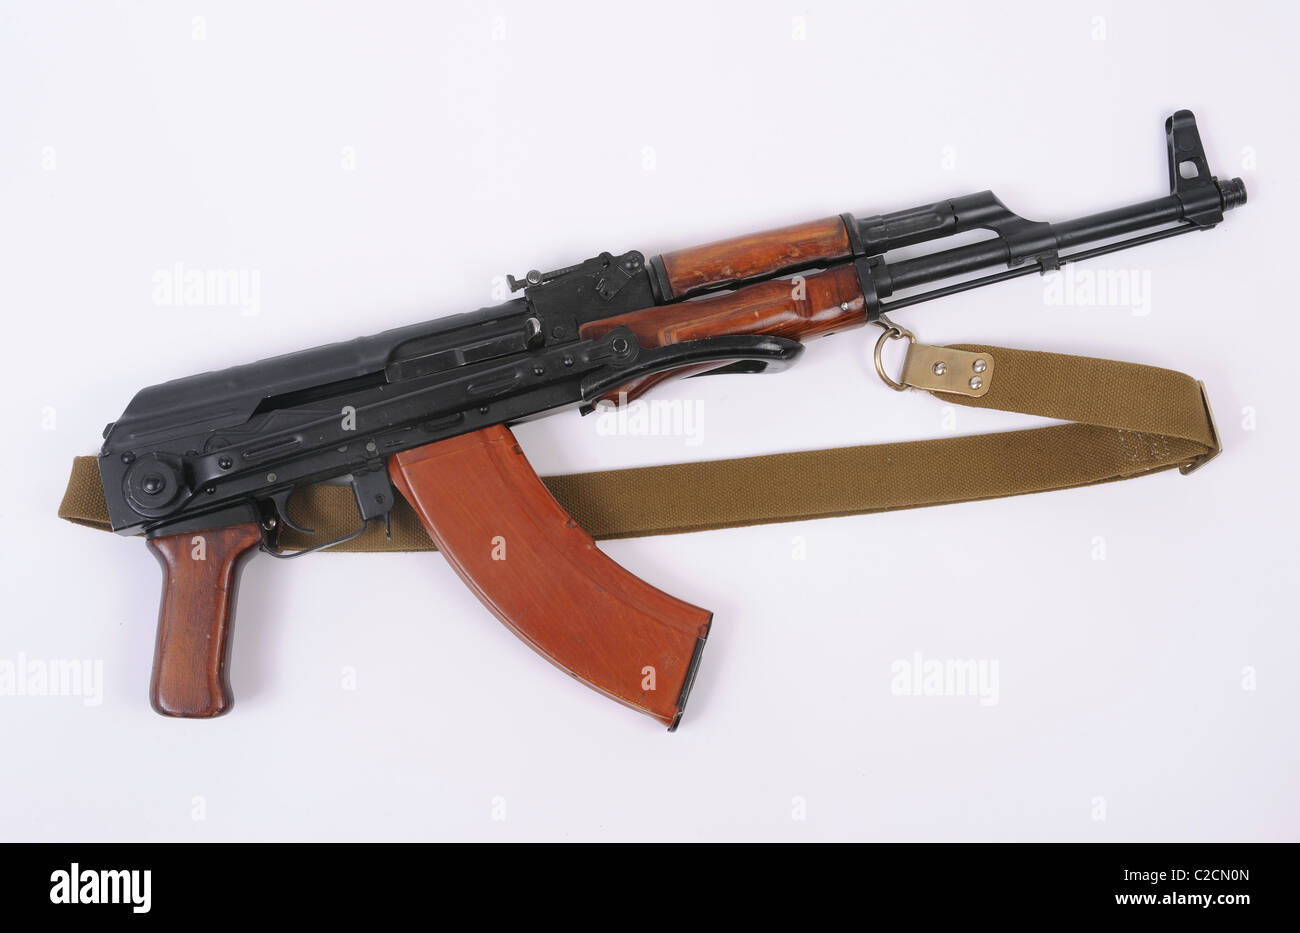 AKMS russo fucile. Modernizzate folding stock versione dell'onnipresente AK47 Kalashnikov fucile da assalto. Foto Stock